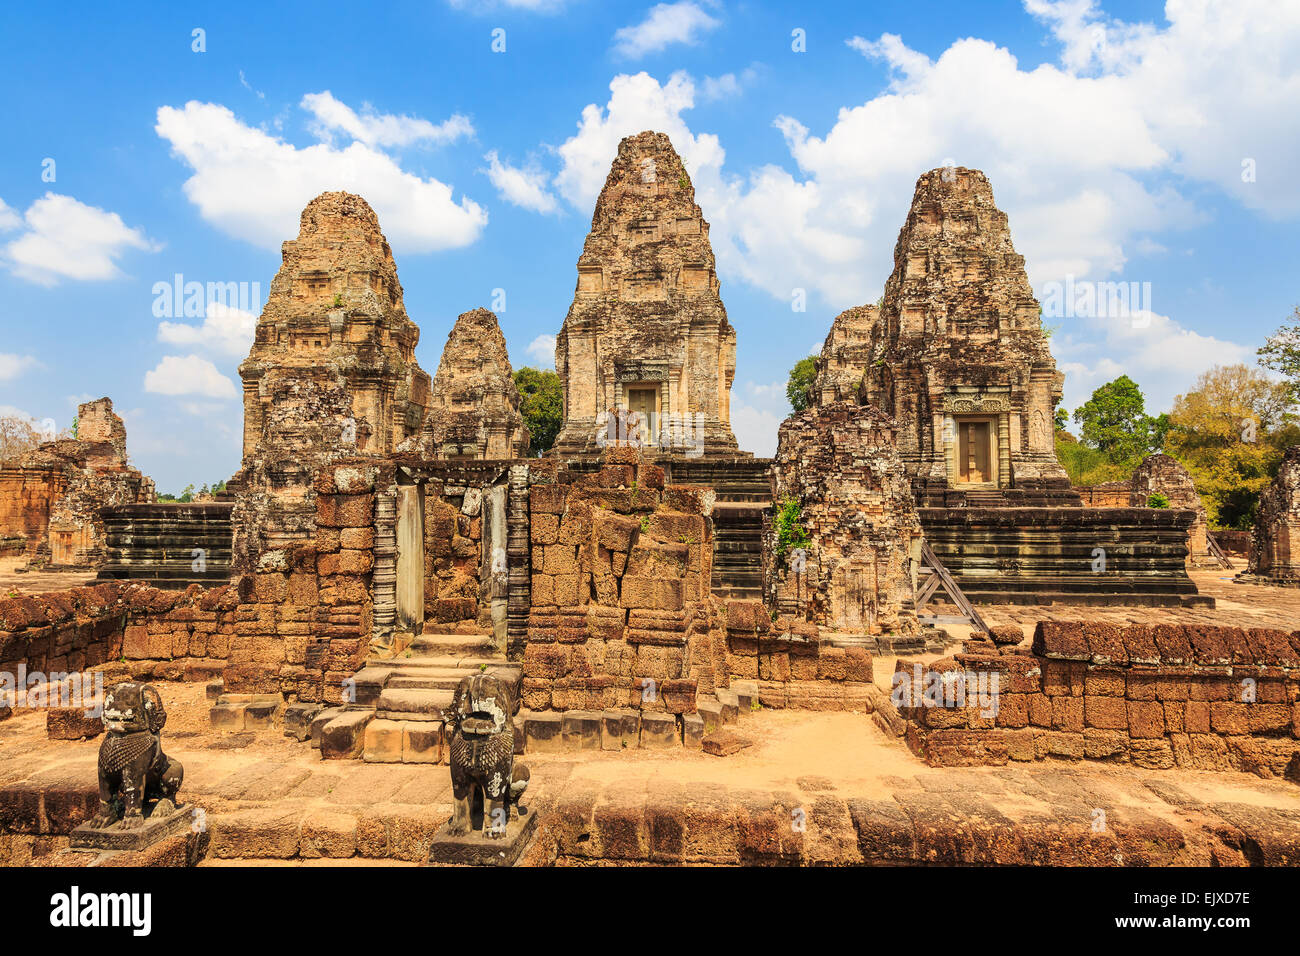 Pre Rup temple. Siem Ream, Cambodia Stock Photo